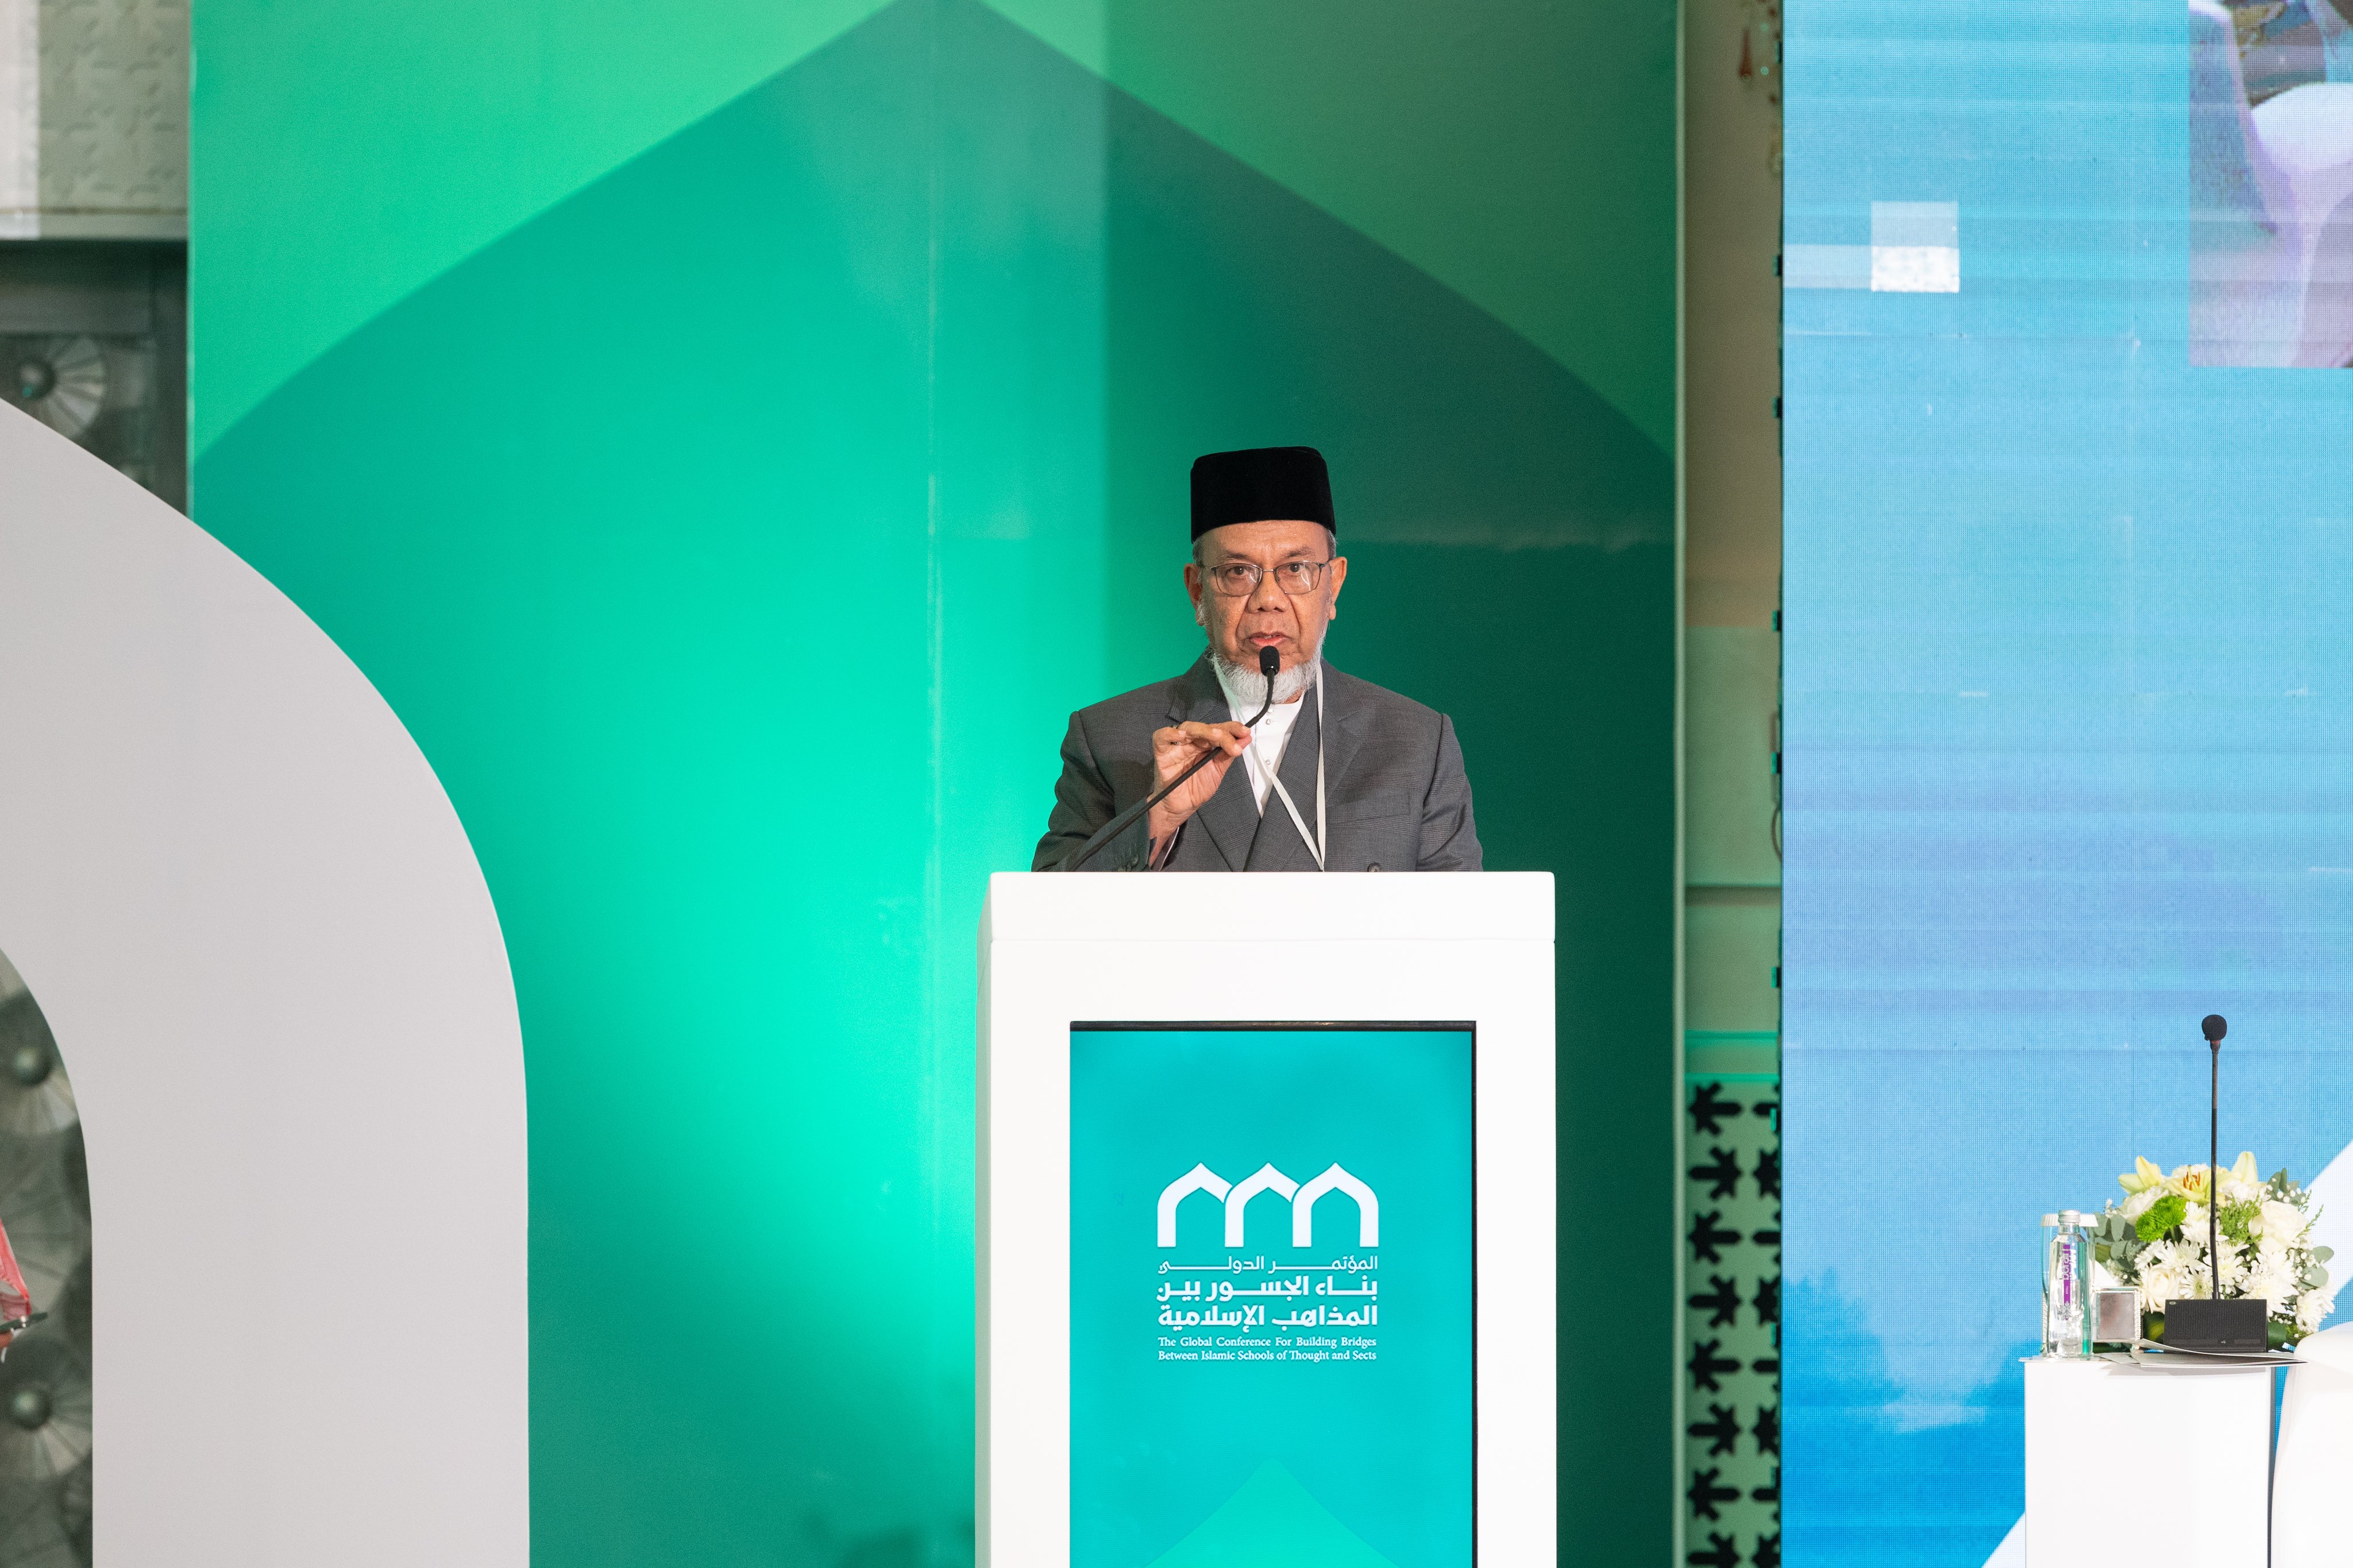 معالي رئيس جمعيةِ عُلماء ماليزيا، الشيخ وان محمد بن عبدالعزيز، في كلمته في الجلسة الافتتاحية لمؤتمر: "بناء الجسور بين المذاهب الإسلامية"